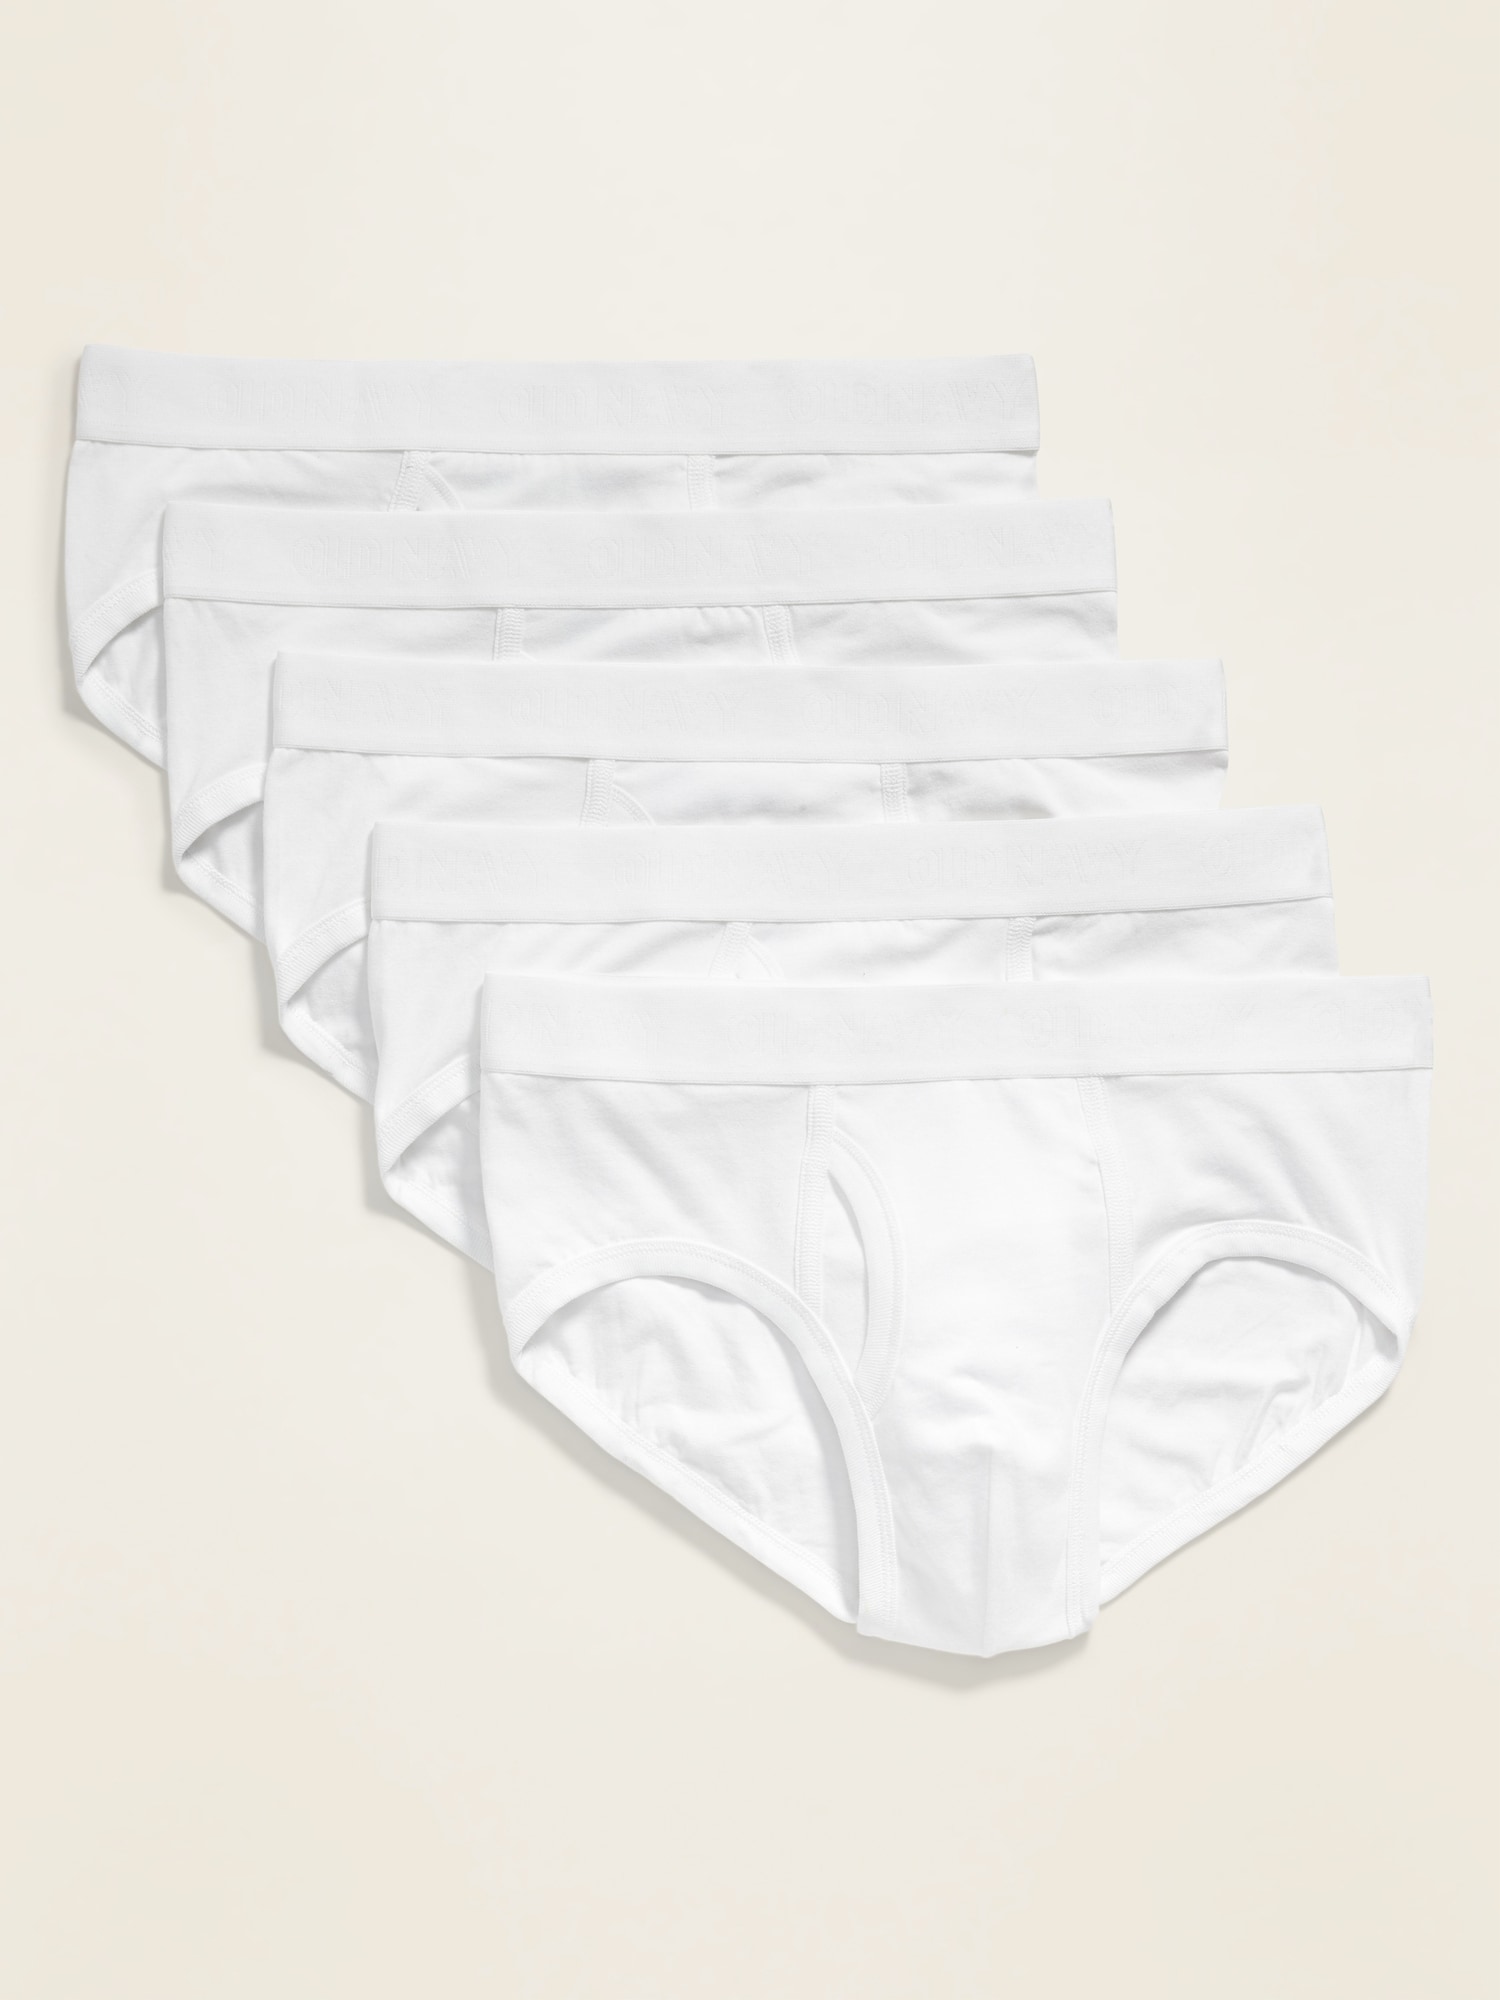 Soft-Washed Built-In Flex Underwear Briefs 5-Pack for Men